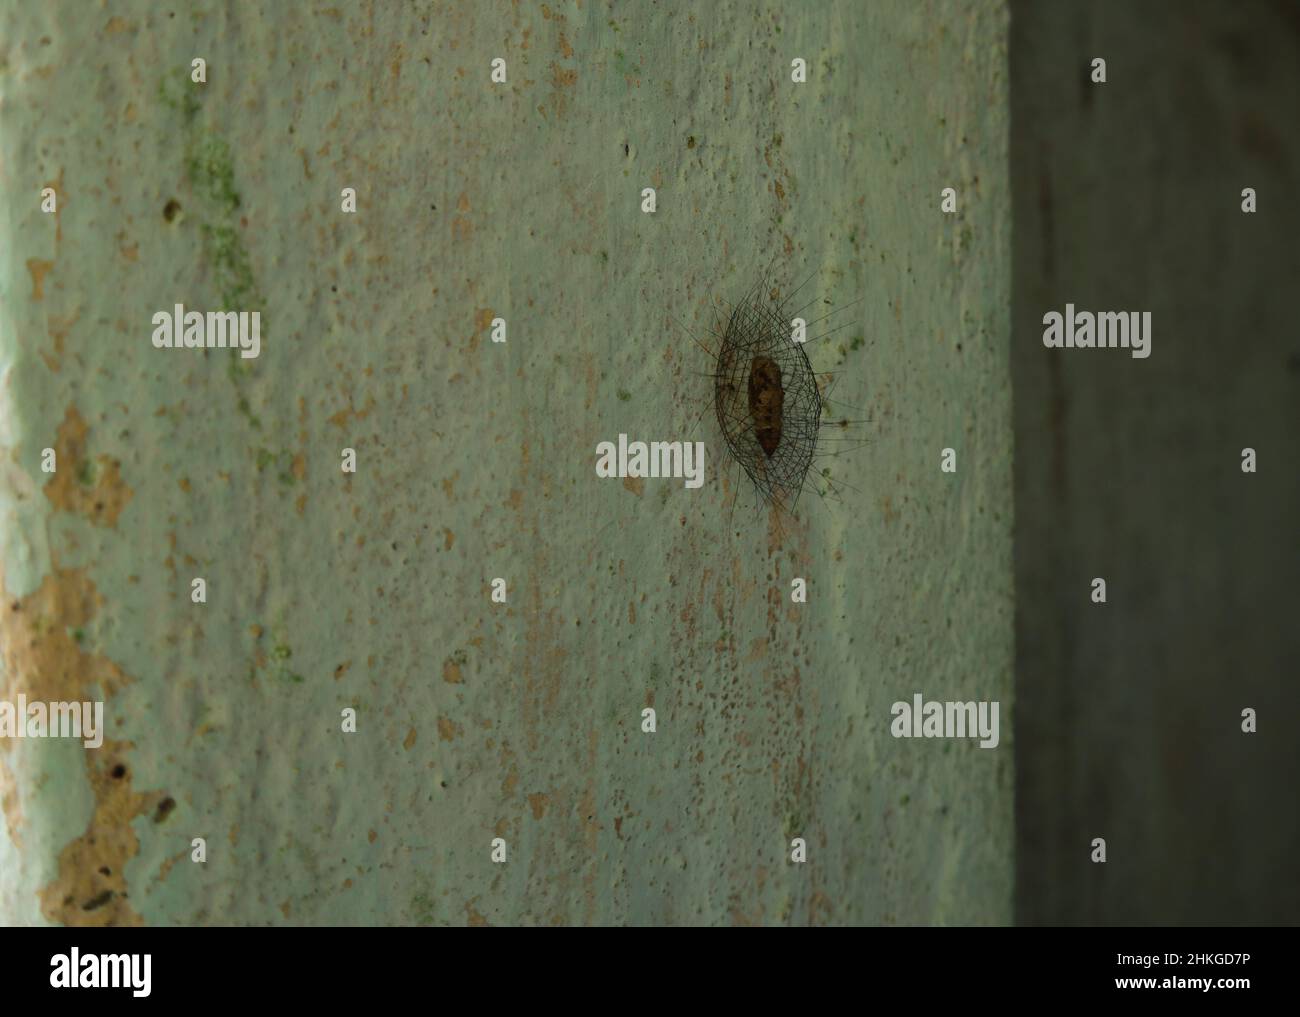 Ein unbekannter Insektenkokon an der Zementwand. Dieser Kokon wird durch eine haarige Schutzschicht geschützt Stockfoto